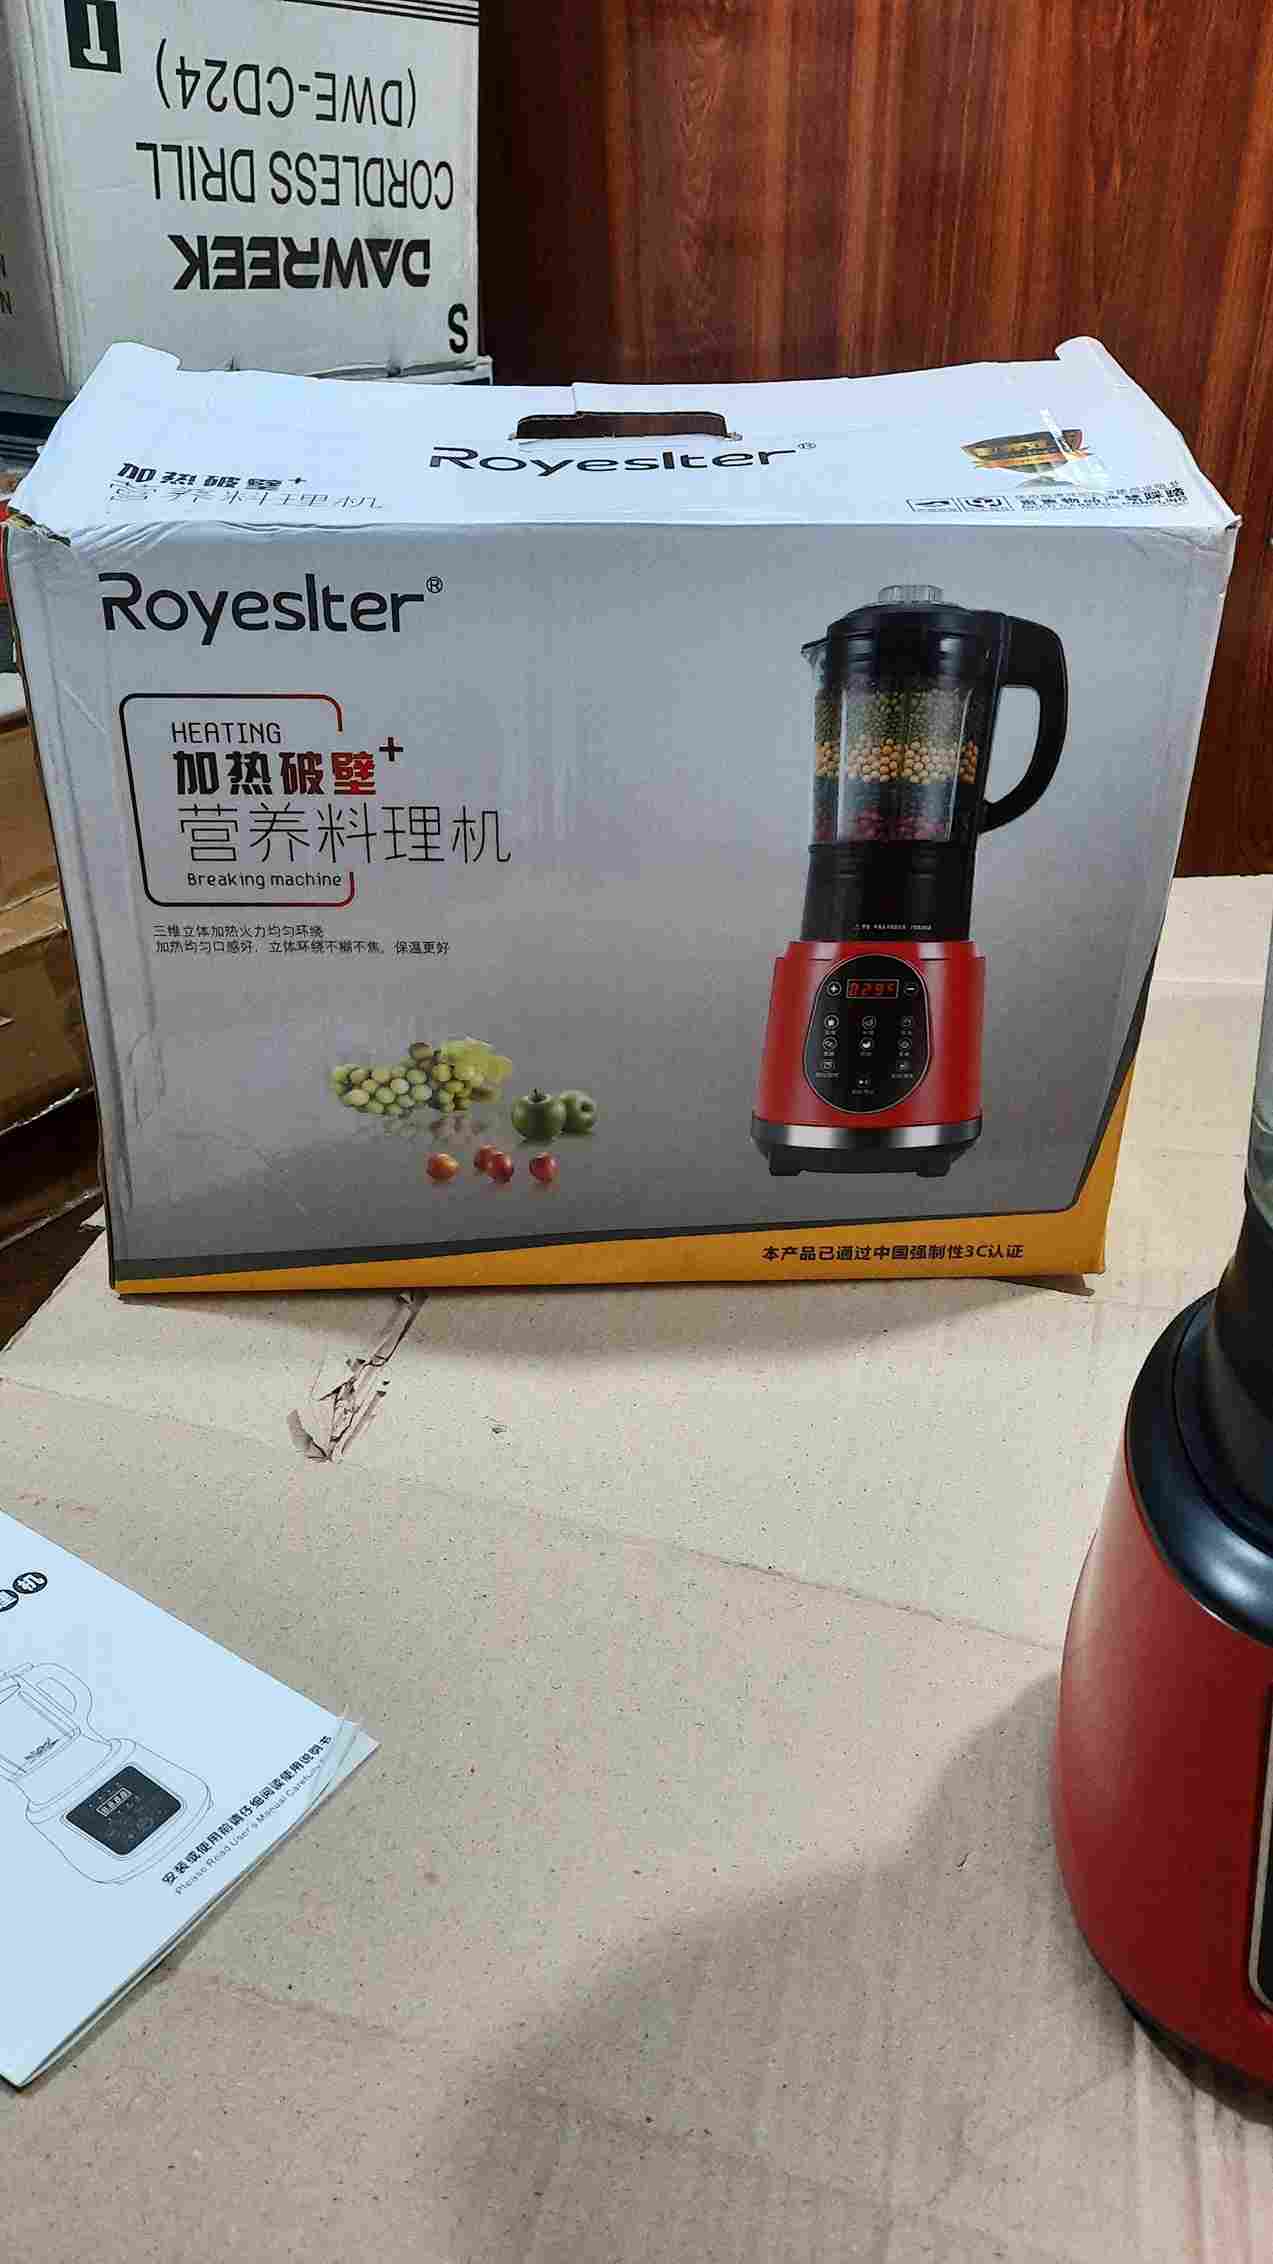 Royeslter Multifunction Blender, Soup maker and Kettle